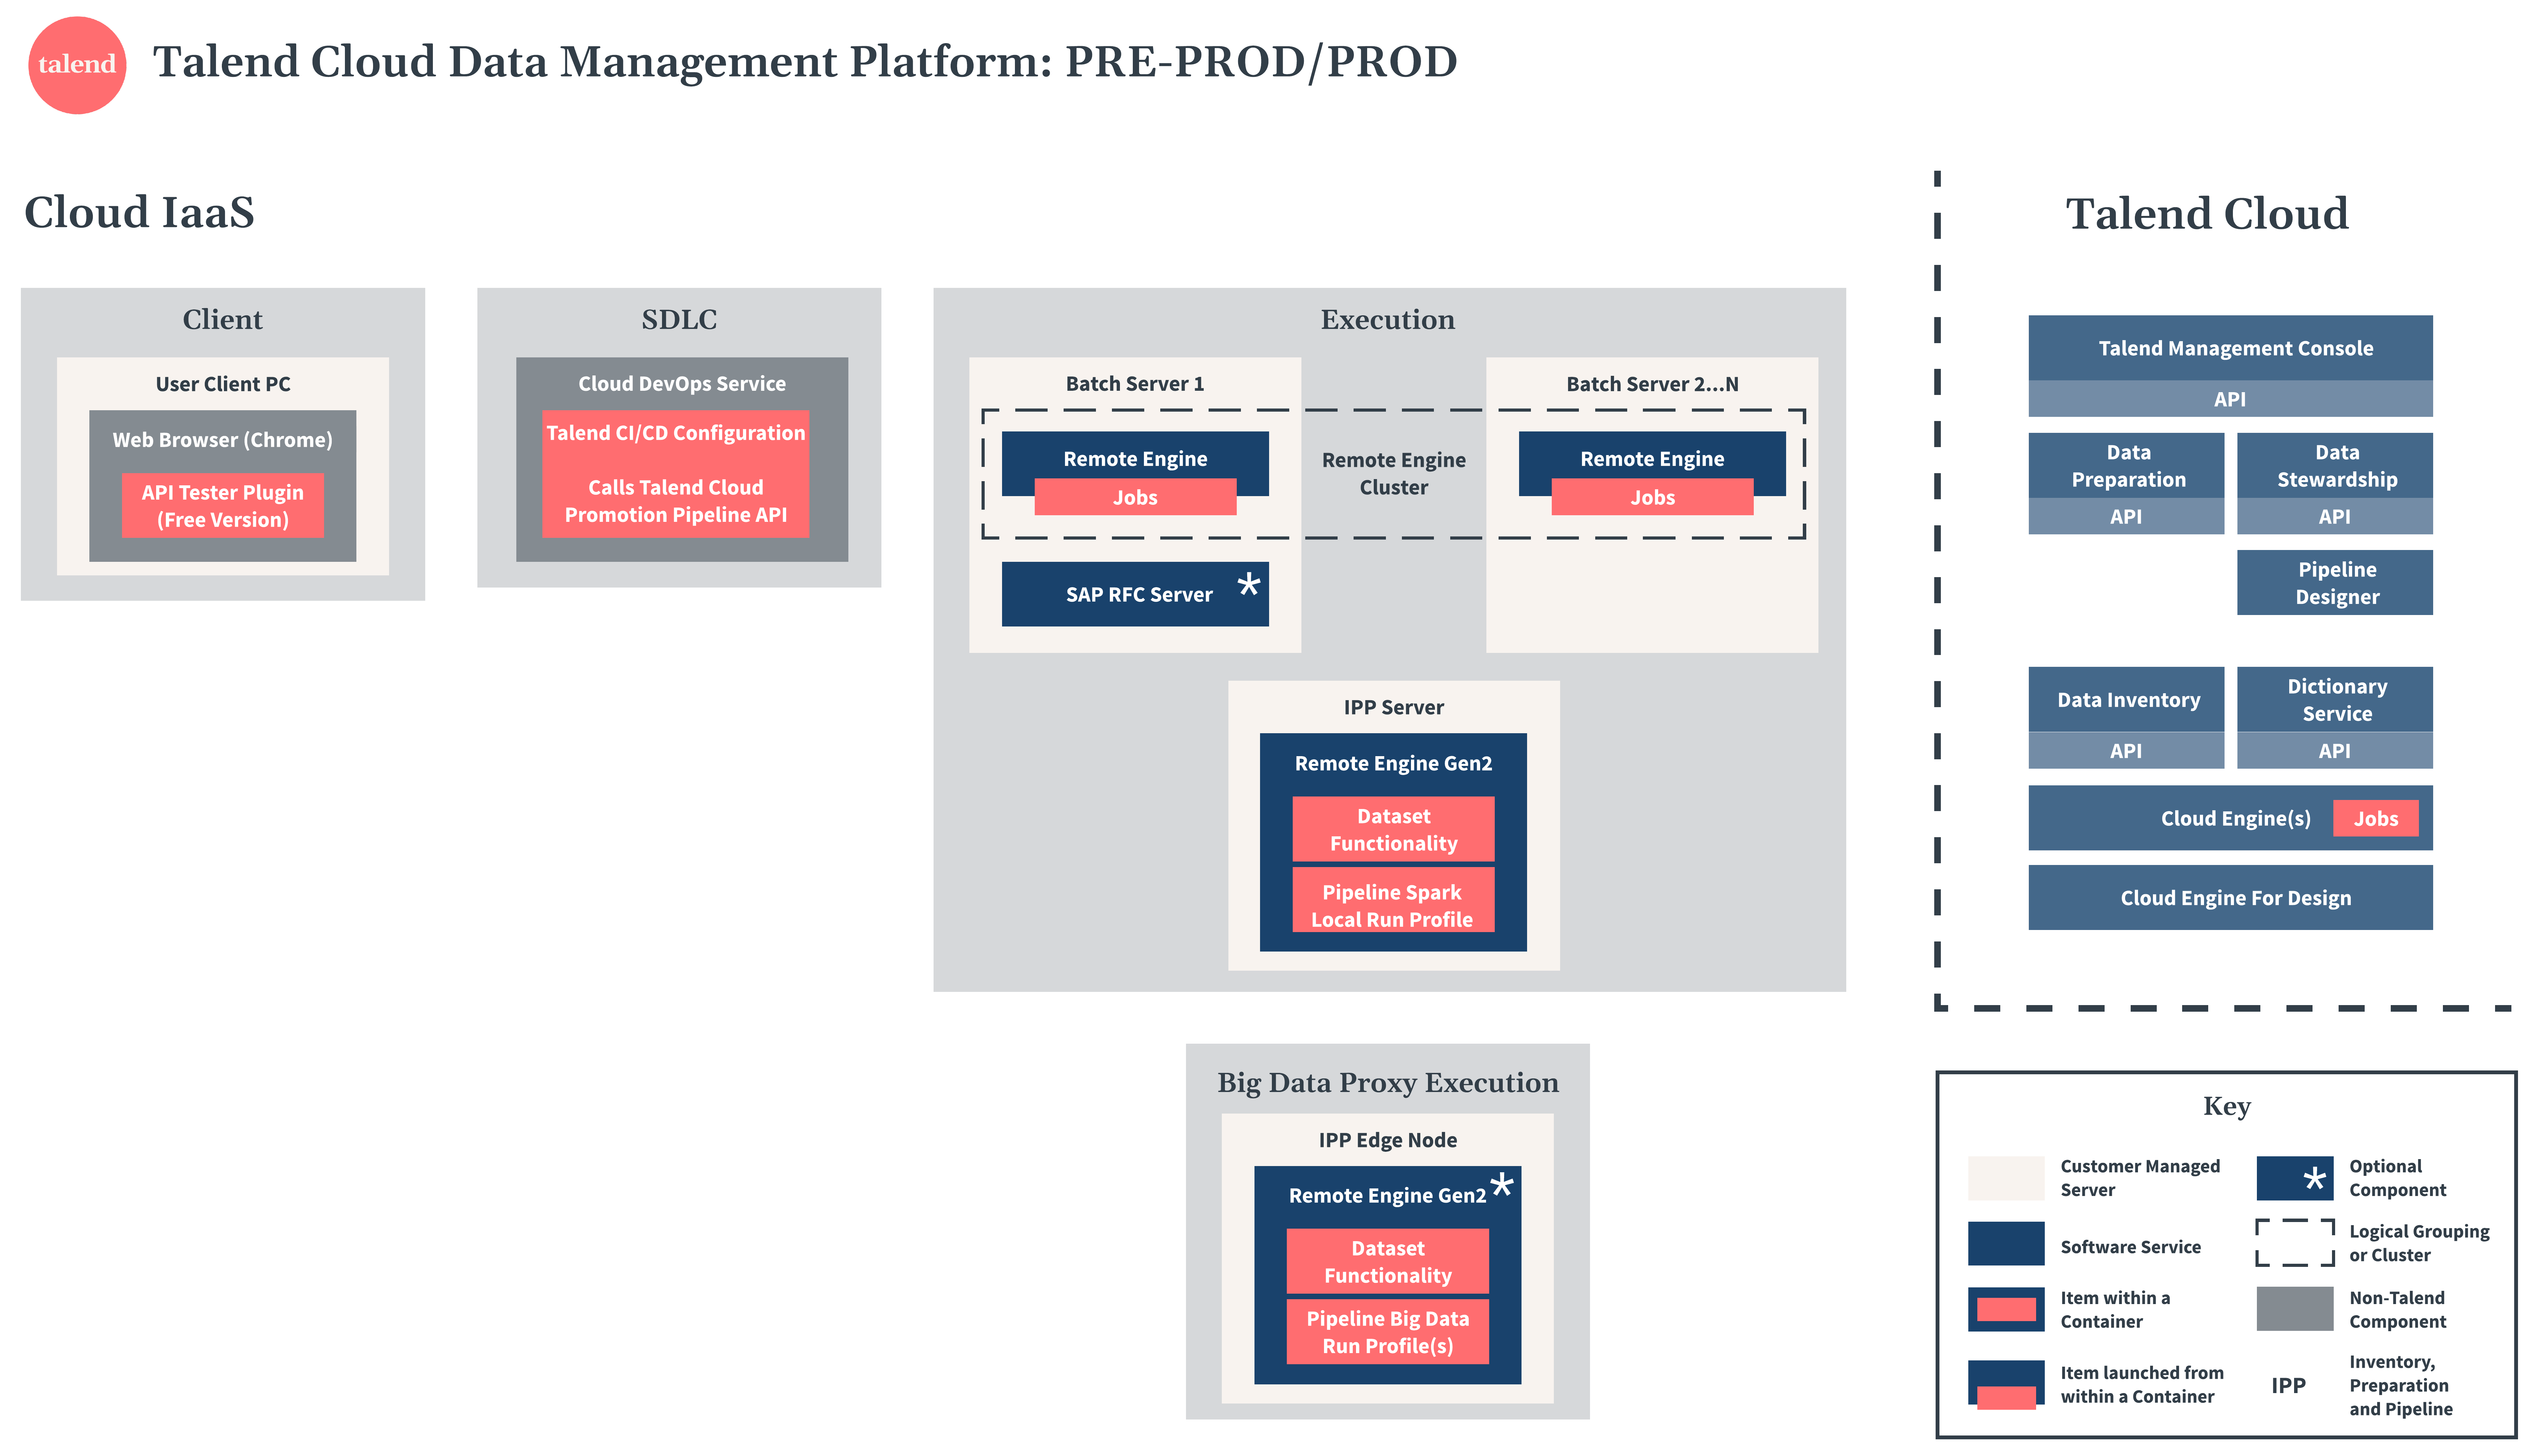 Talend Cloud Data Management Platform pre-production and production diagram.